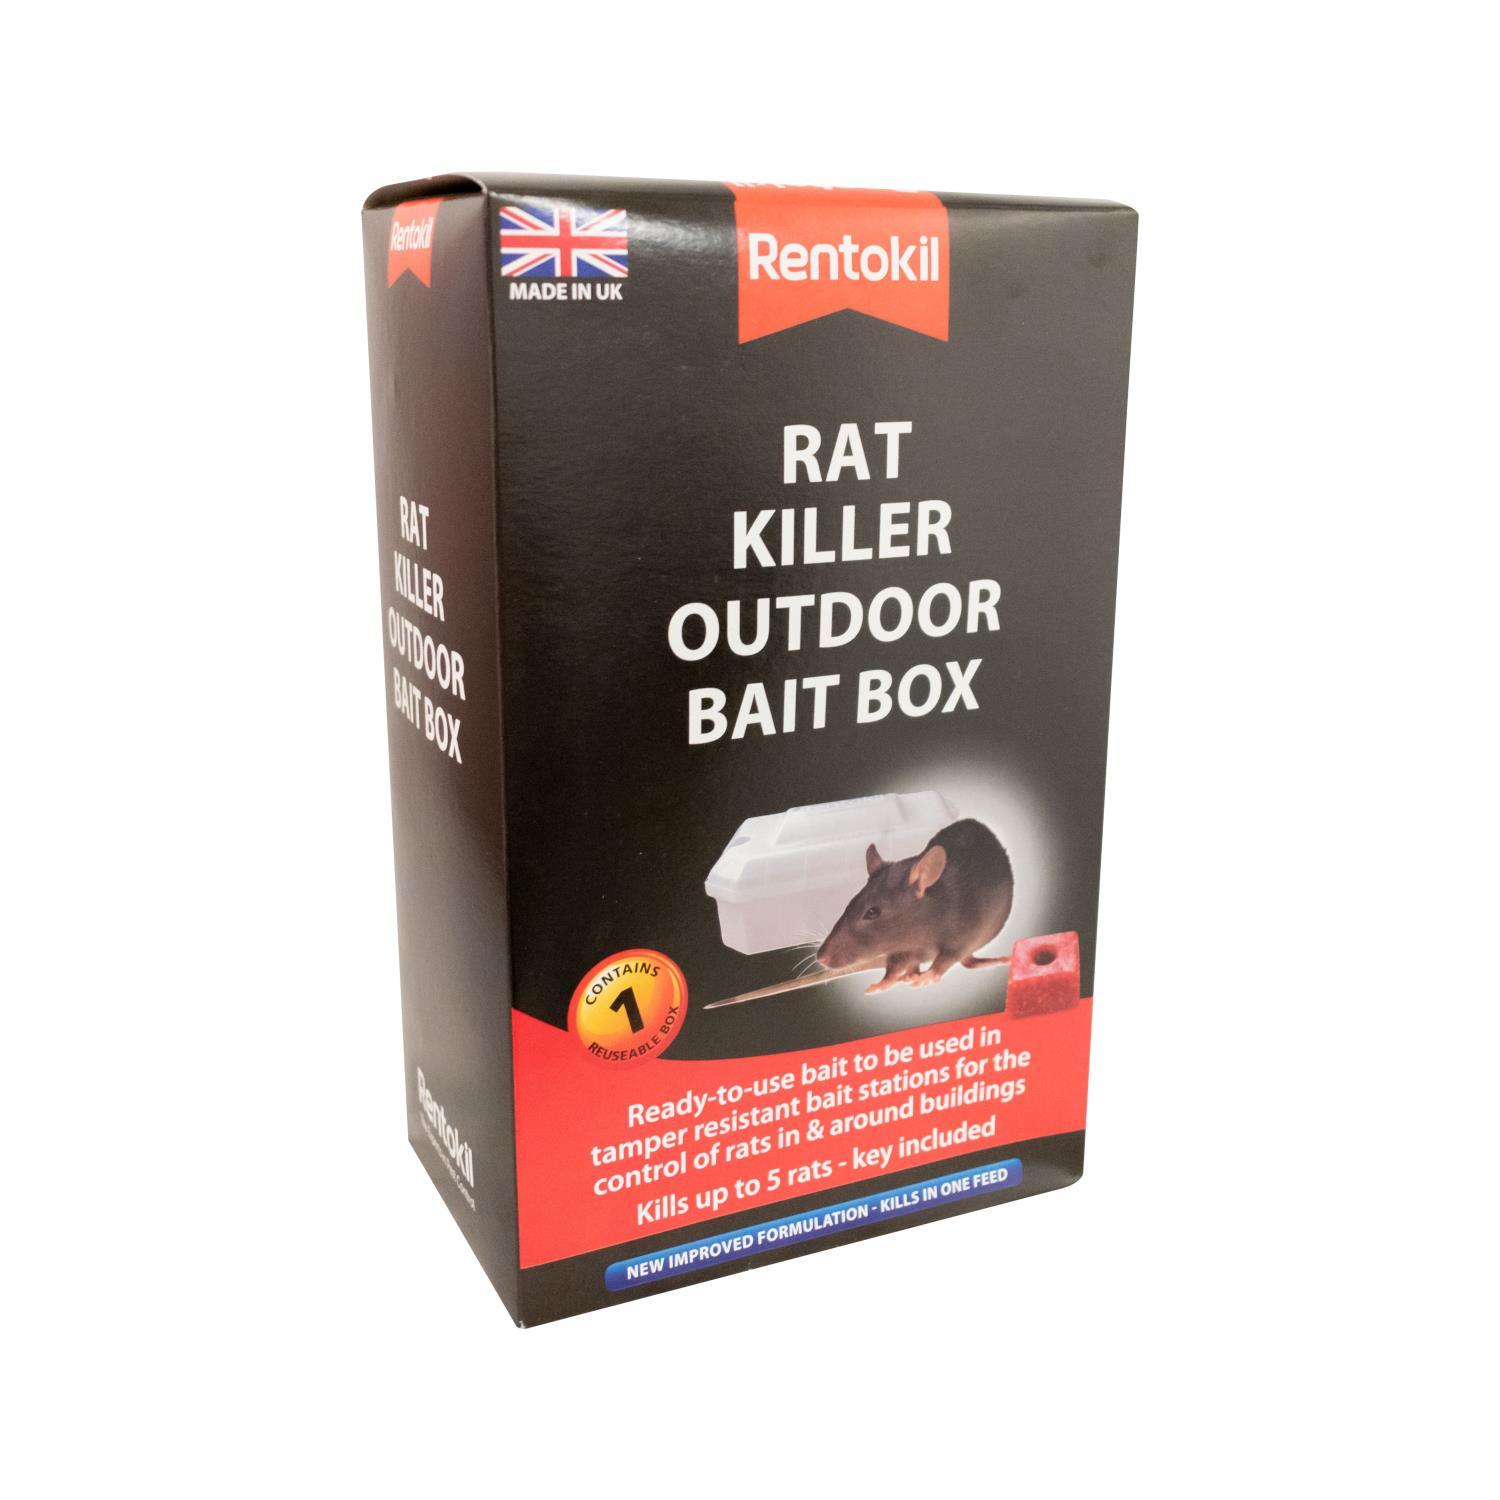 Buy Rentokil Pre Baited Rat Killer Box from Fane Valley Stores